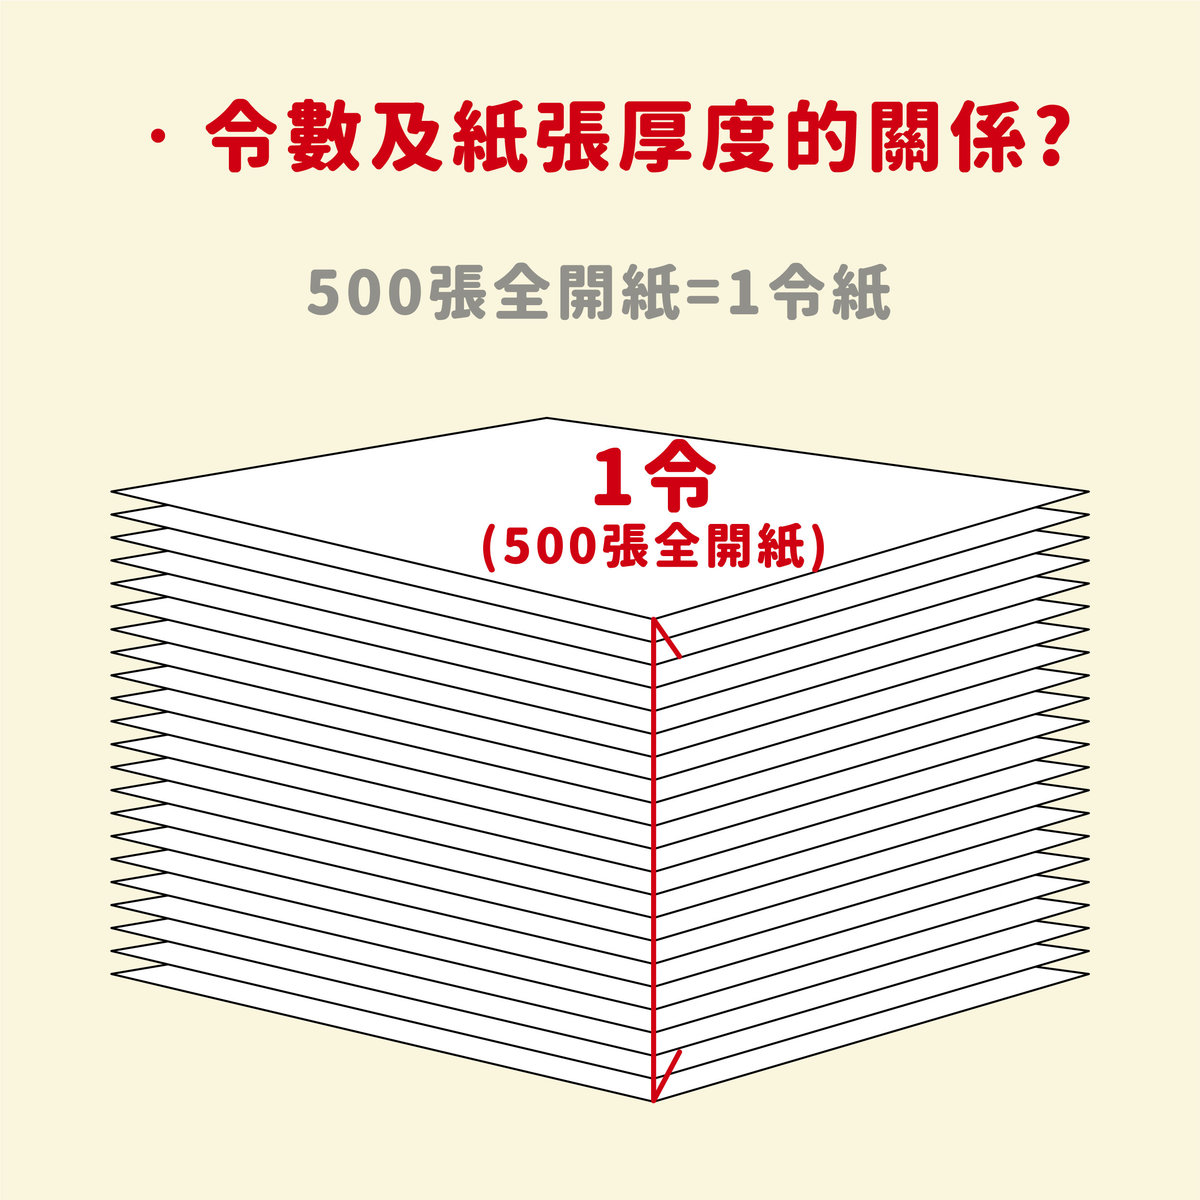 書冊裝訂進階 | 序 : 紙張厚度&重量計算方式及應用－令數及紙張厚度的關係